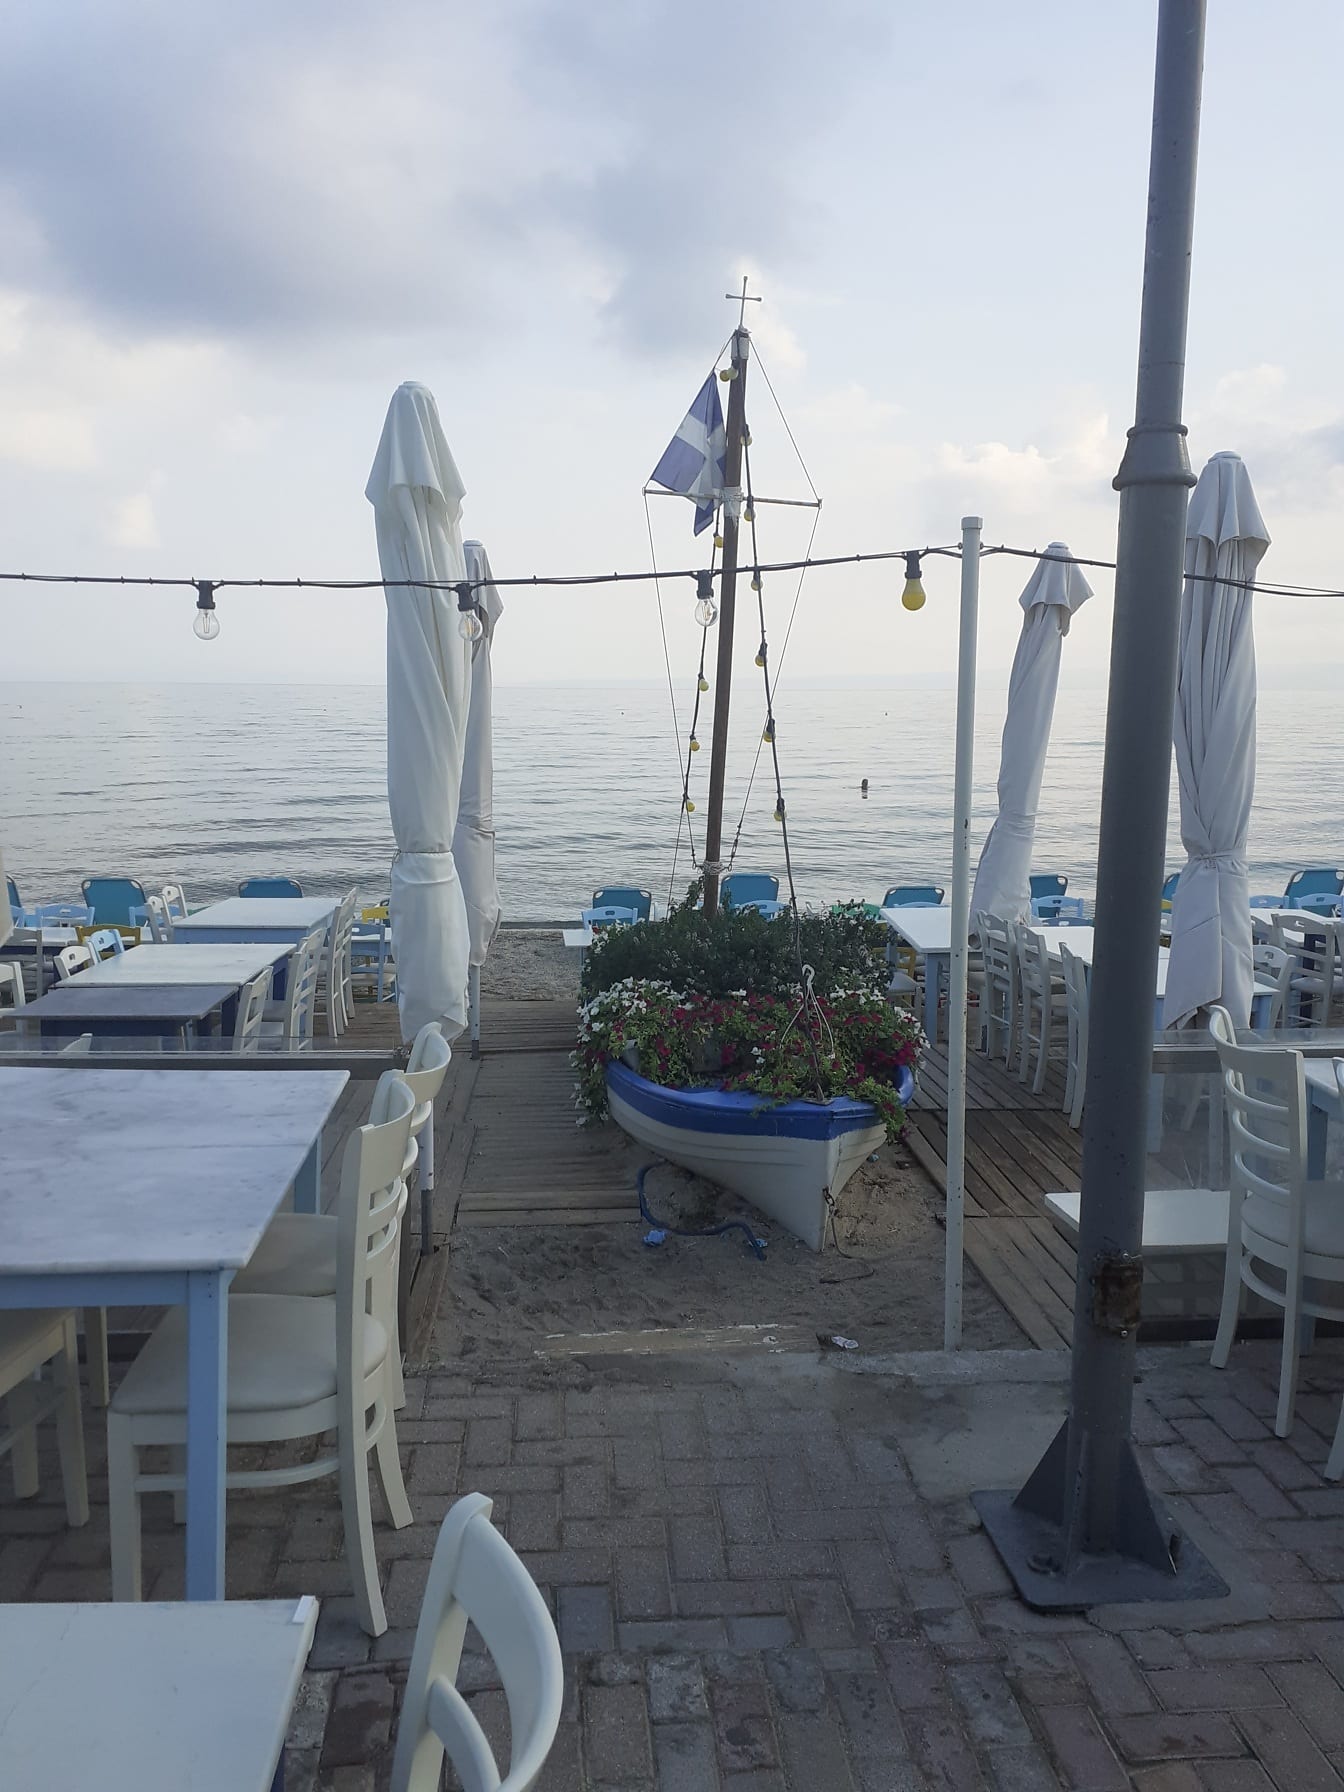 Dekoracja łodzi na tarasie restauracji przy plaży